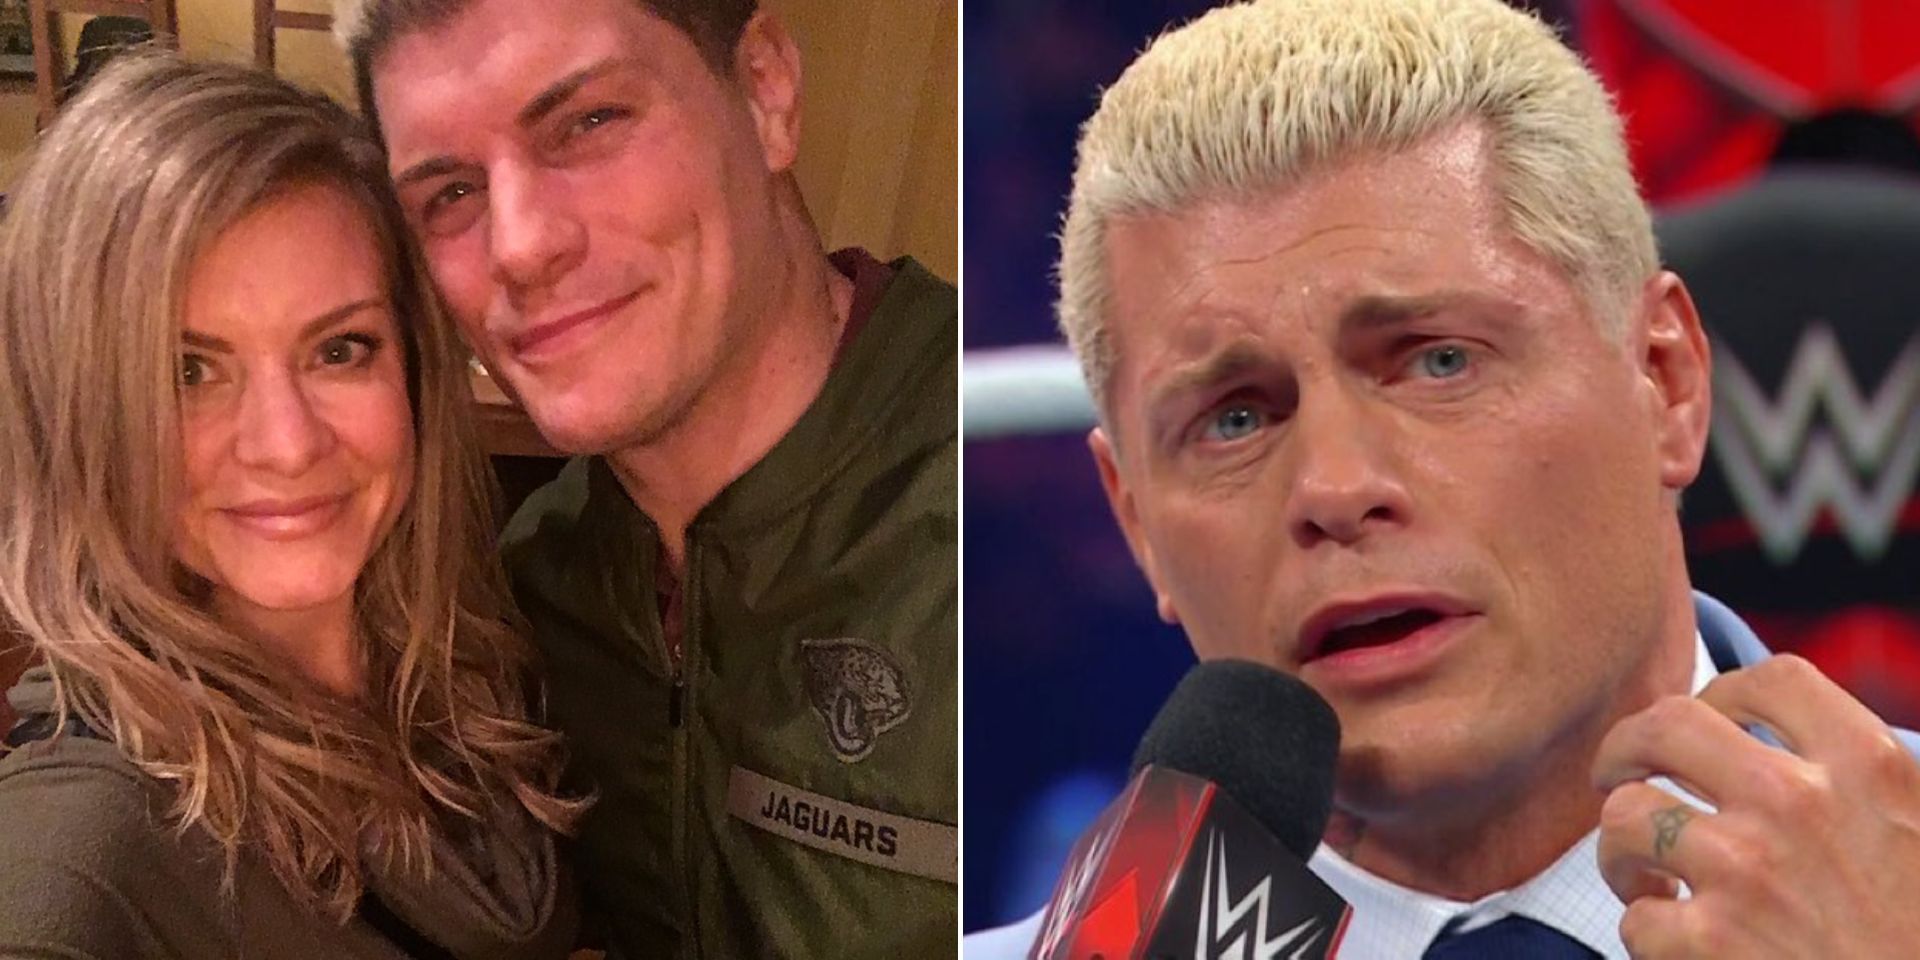 Cody Rhodes cut an emotional promo on RAW